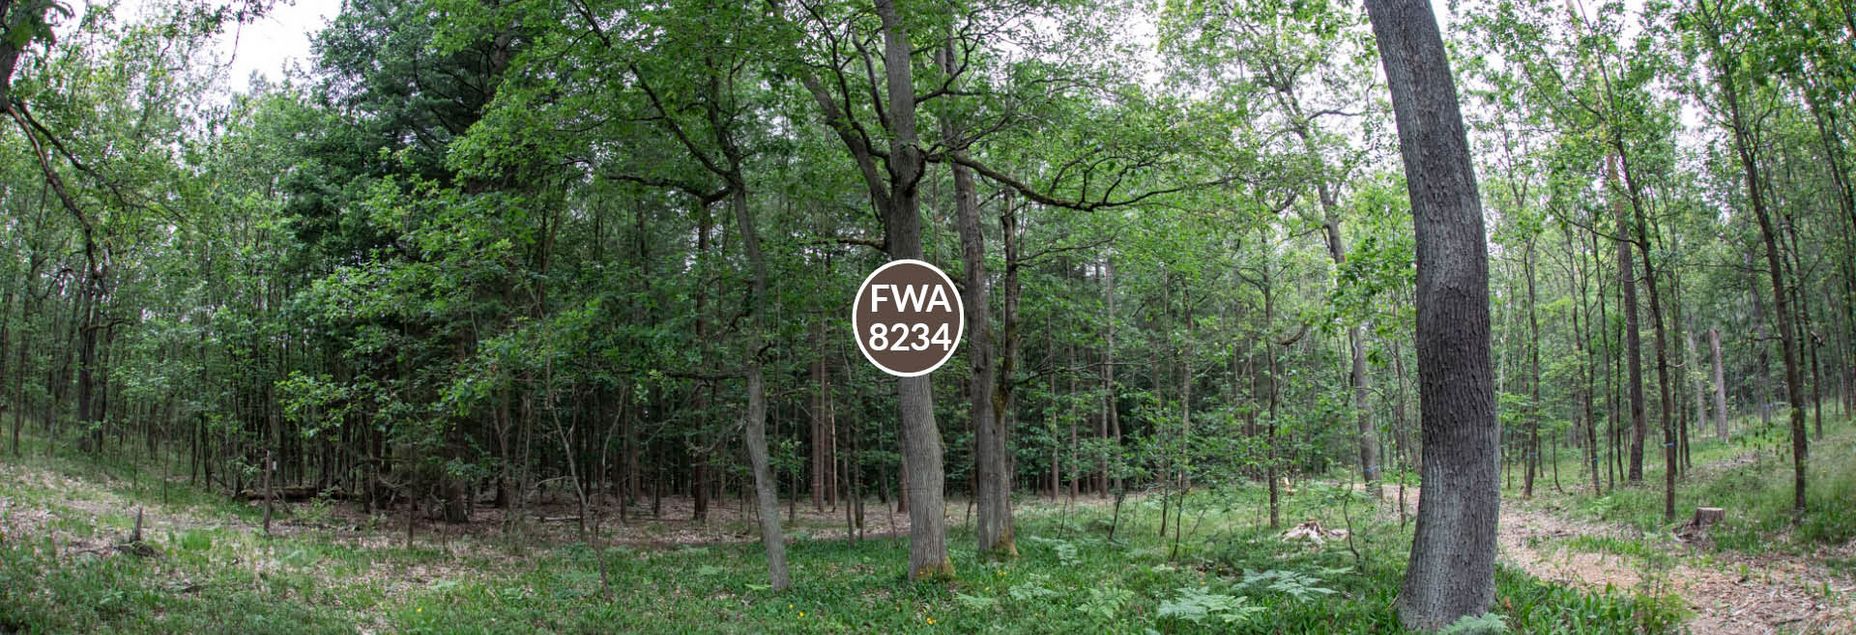 FriedWald-Onlineshop FWA 8234